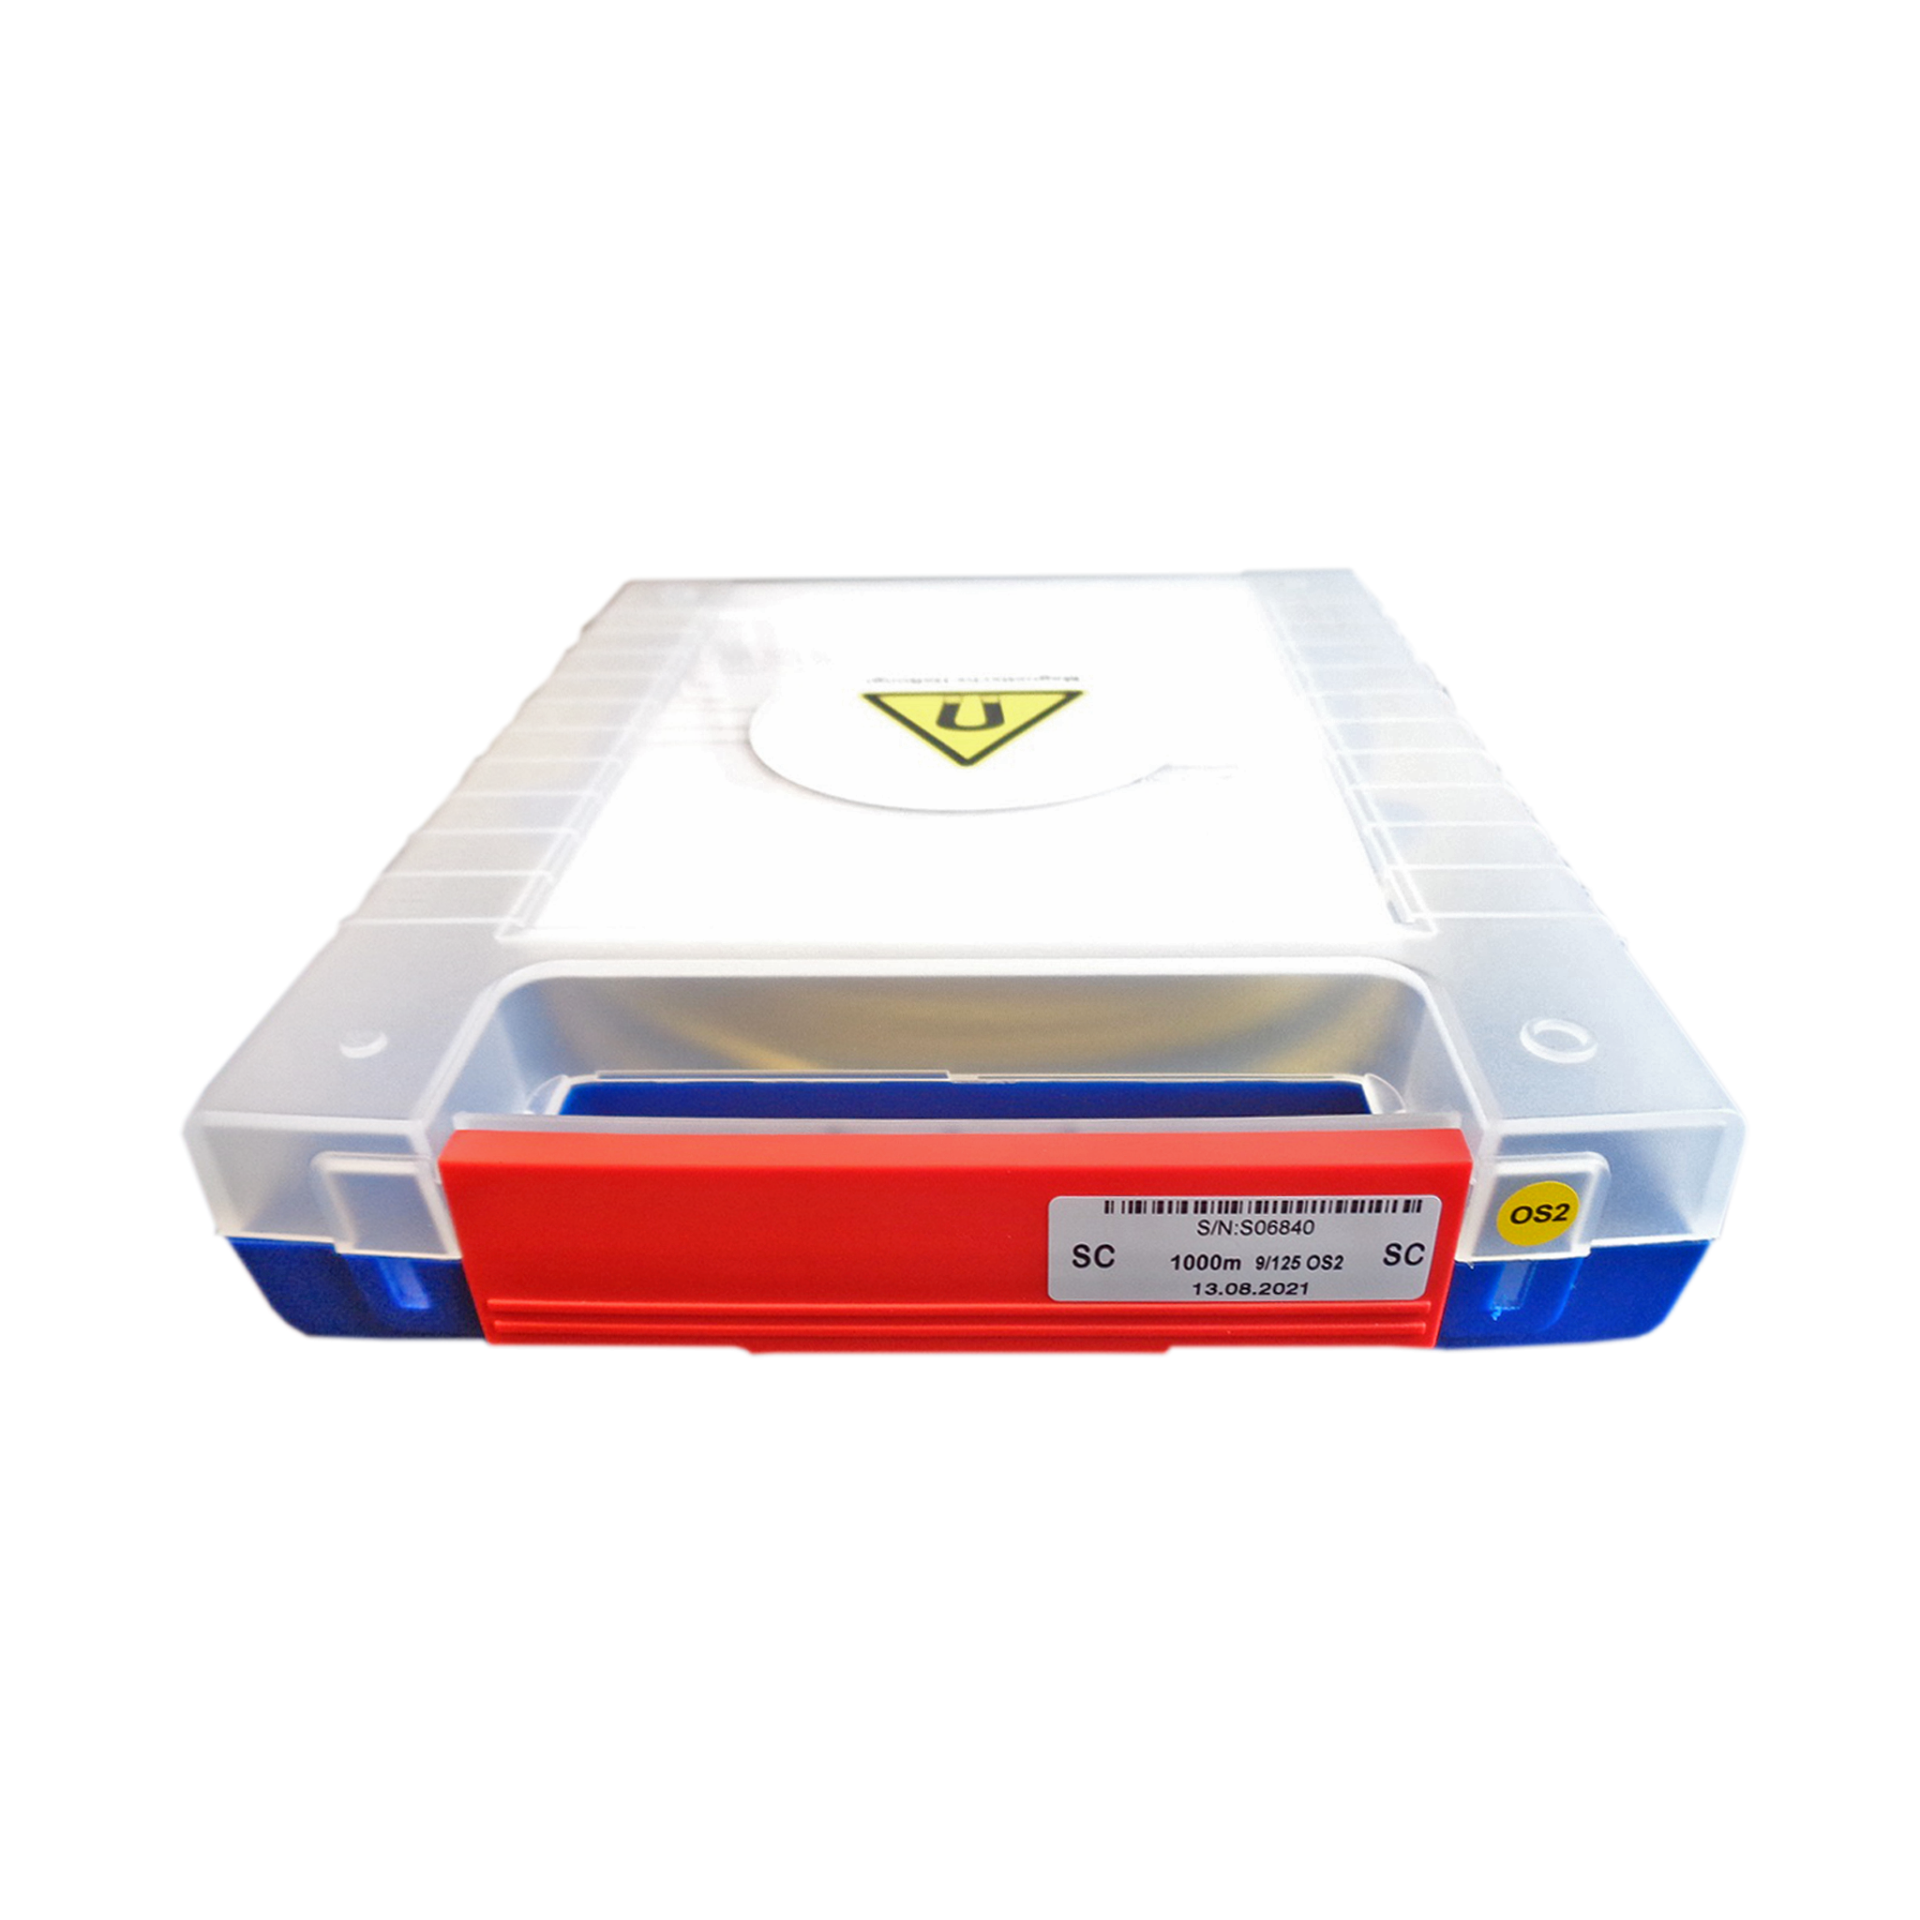 OTDR Vorlauffaser Box OS2 E2000®/APC-SC/APC 1000m 